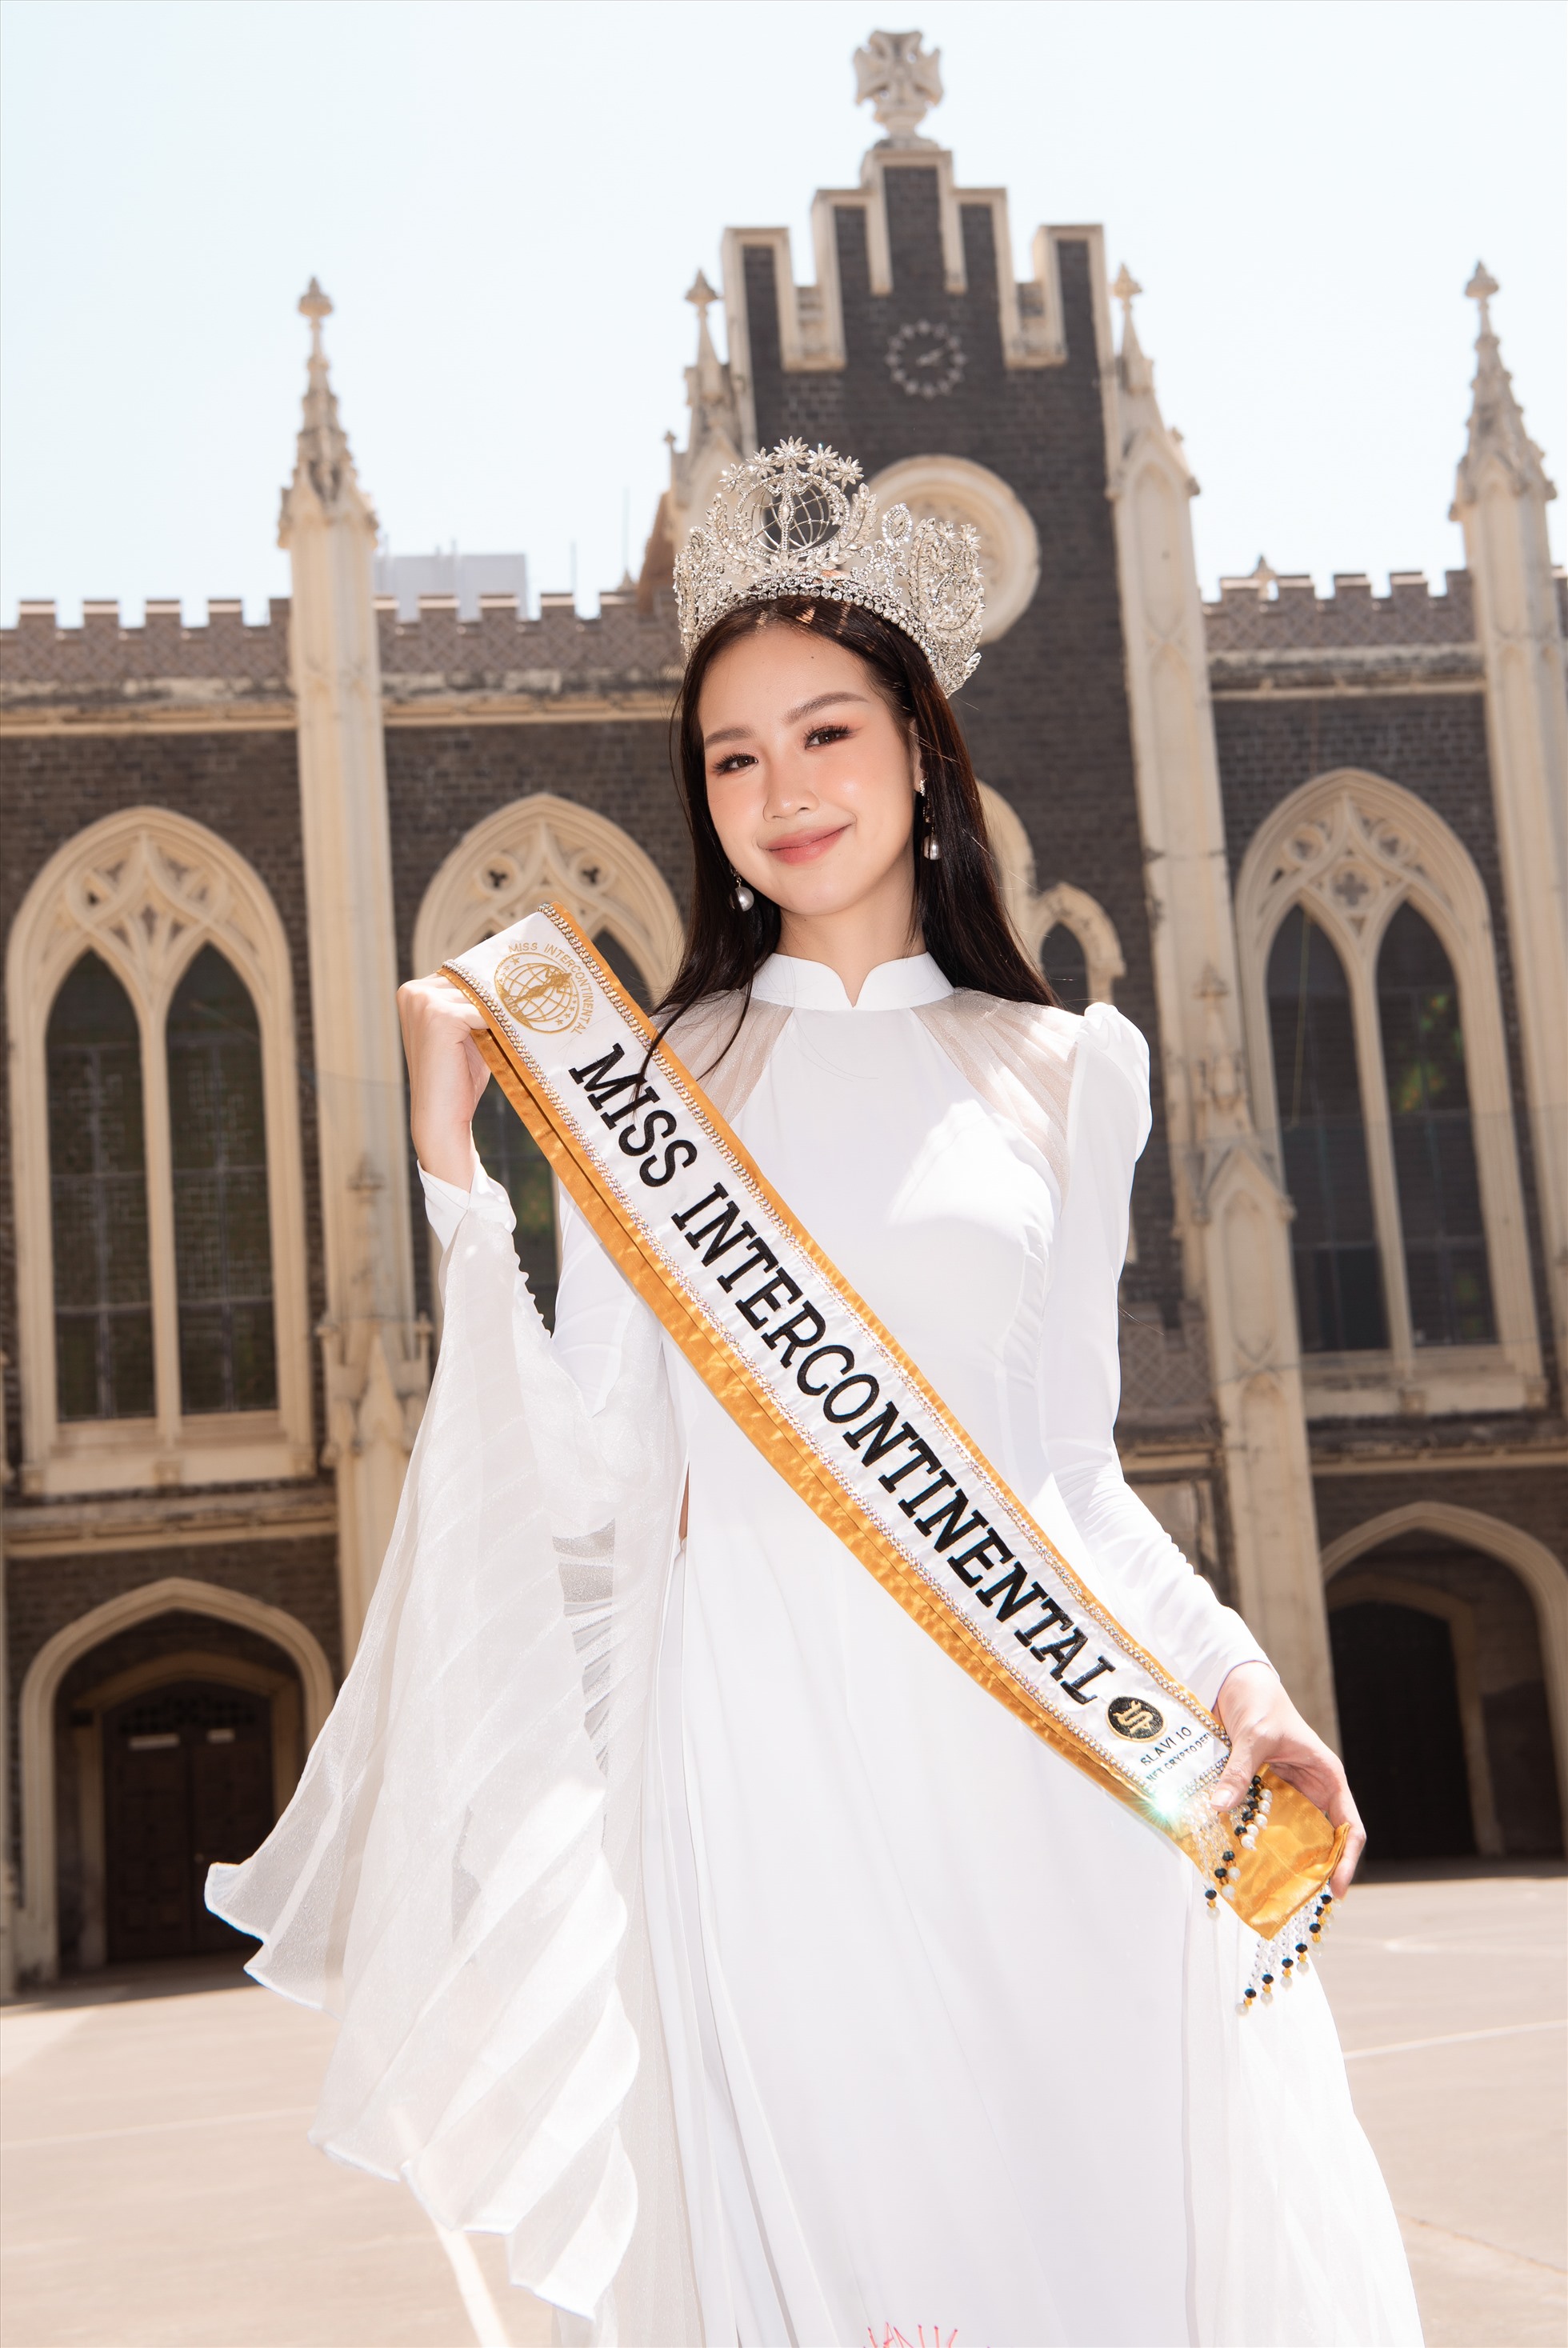 Tạm gác lại những bộ cánh rực rỡ của nàng hậu Quốc tế, Bảo Ngọc lựa chọn chiếc áo dài trắng đơn giản, phần tà xòe rộng mang niềm tự hào văn hoá Việt Nam đến với sinh viên Quốc tế. C